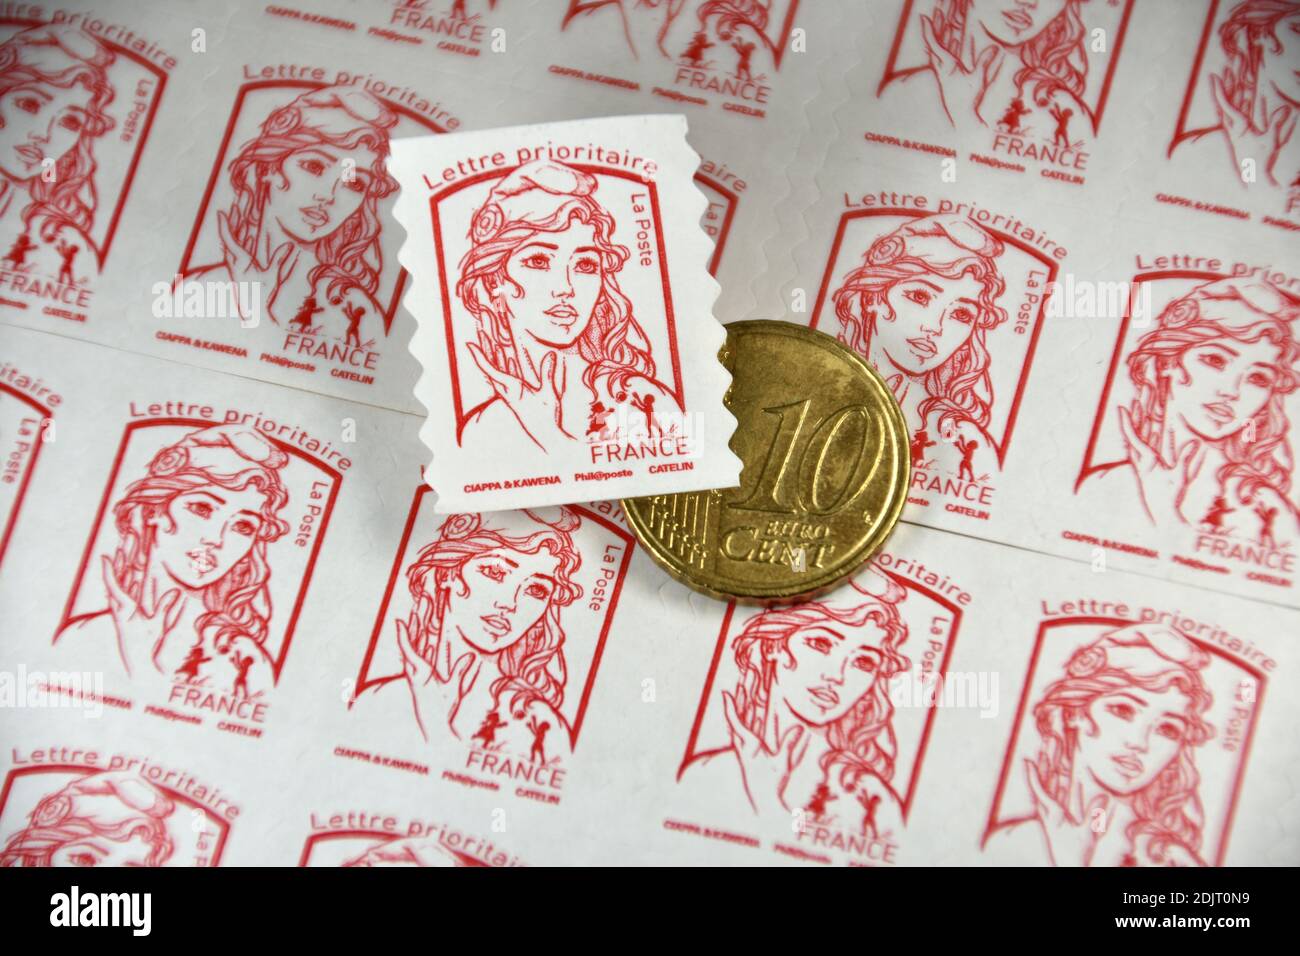 Sur cette photo, un cachet de poste et une pièce de 10 centimes d'euro sont exposés. Le groupe la poste a annoncé que le prix des timbres augmentera en moyenne de 4.7% à compter du 1er janvier 2021. Banque D'Images